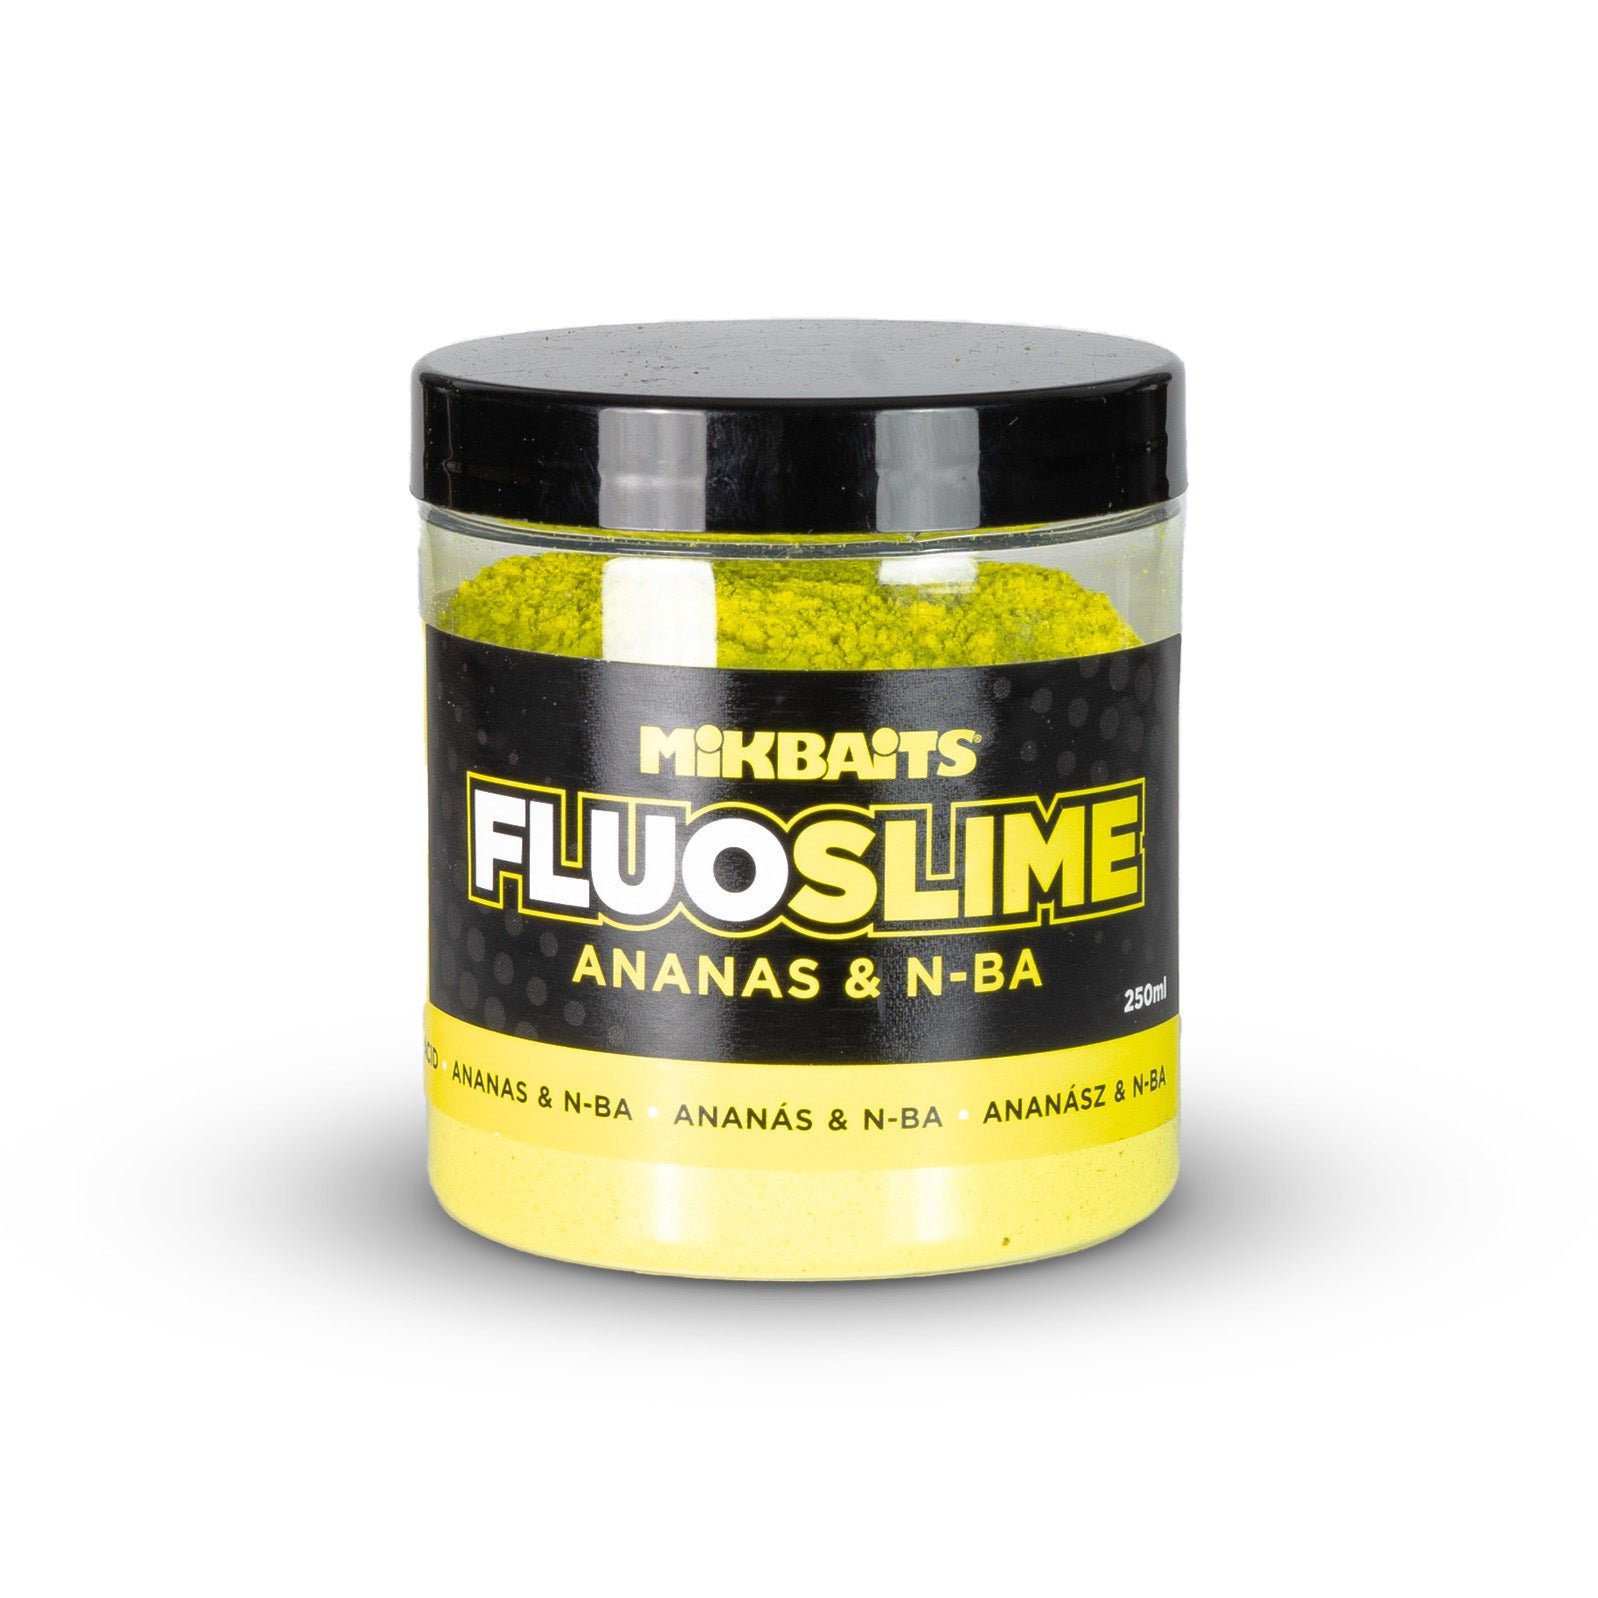 Mikbaits Fluo slime coating dip 100g Pineapple N-BA